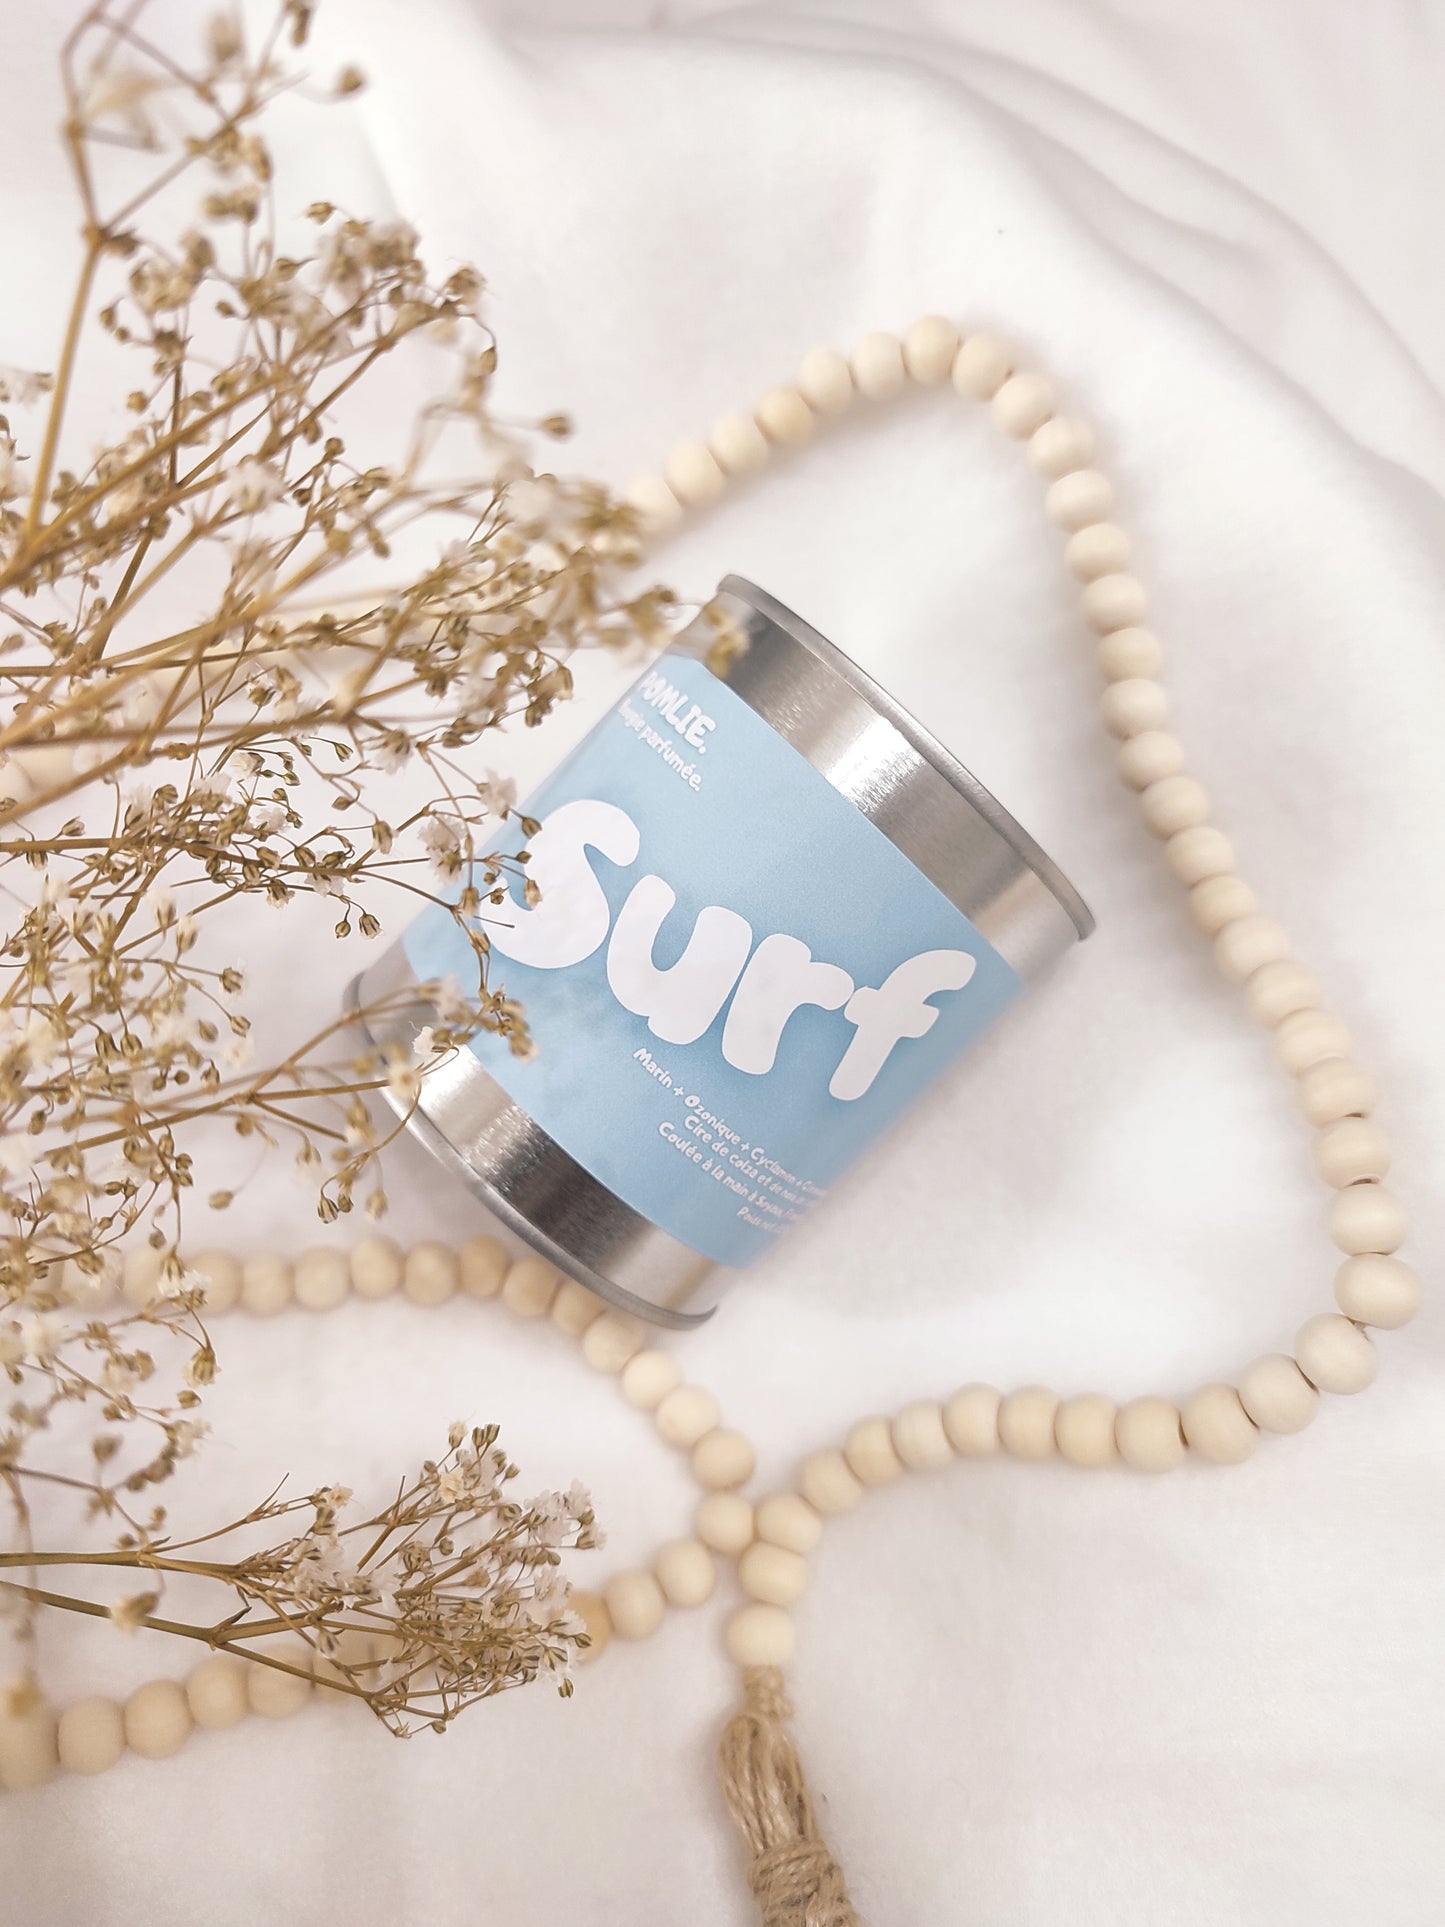 Bougie parfumée Surf bleue avec bijoux et fleurs séchées.